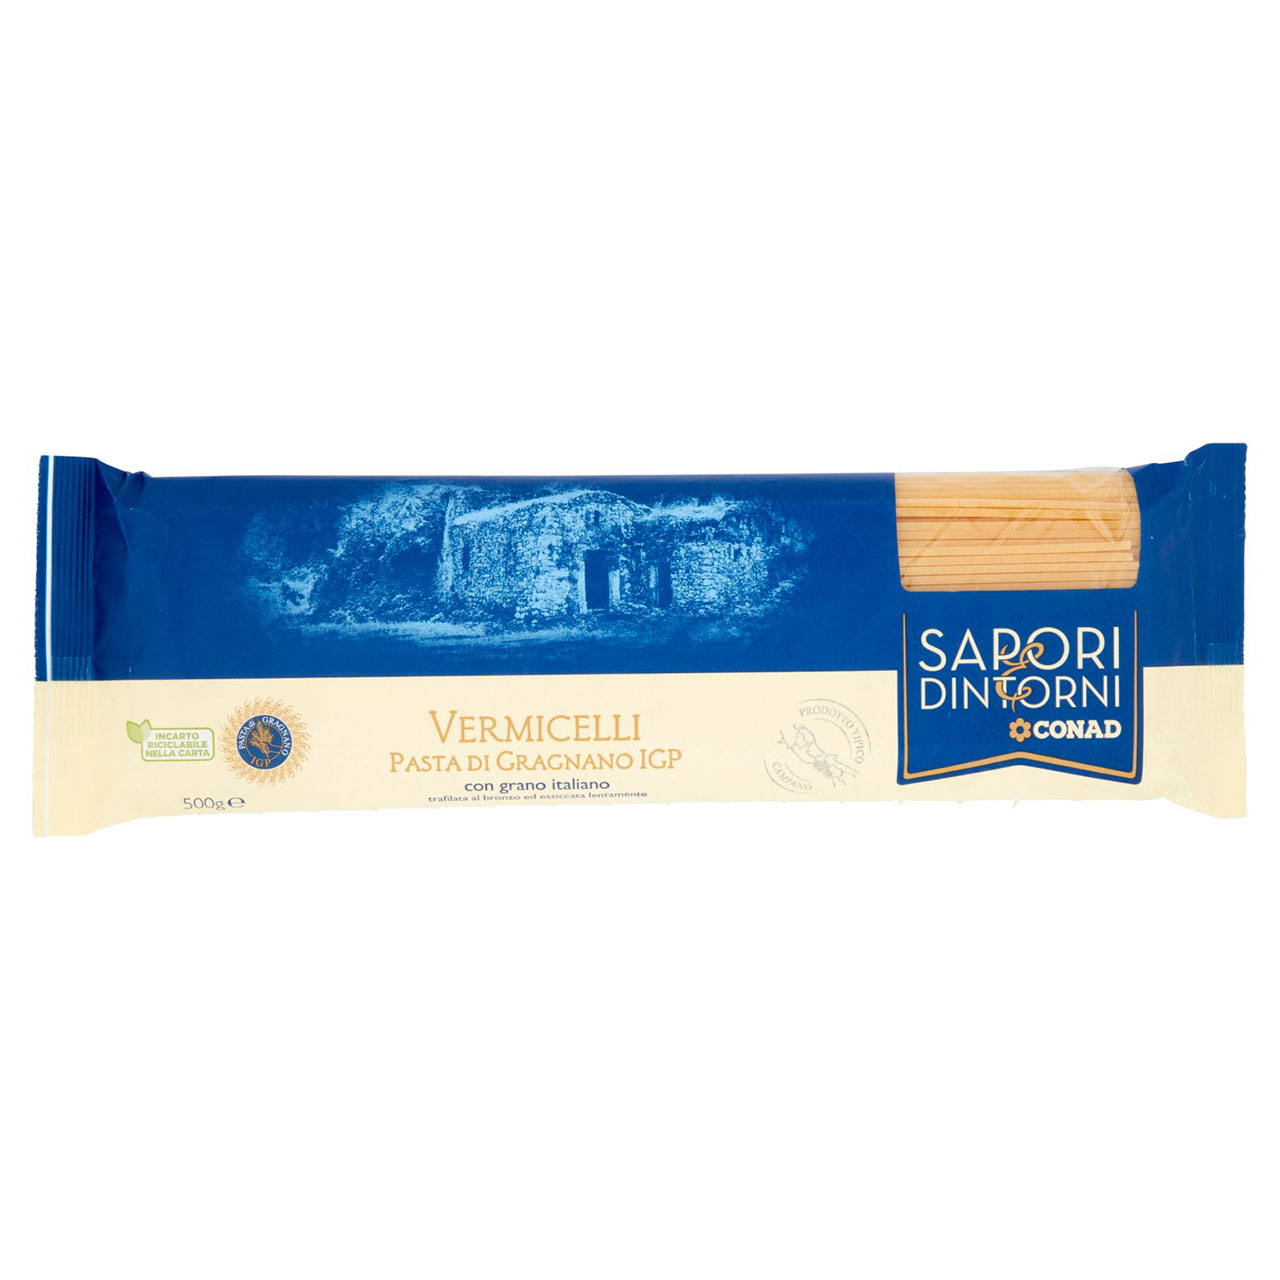 SAPORI & DINTORNI CONAD Vermicelli Pasta di Gragnano IGP 500 g